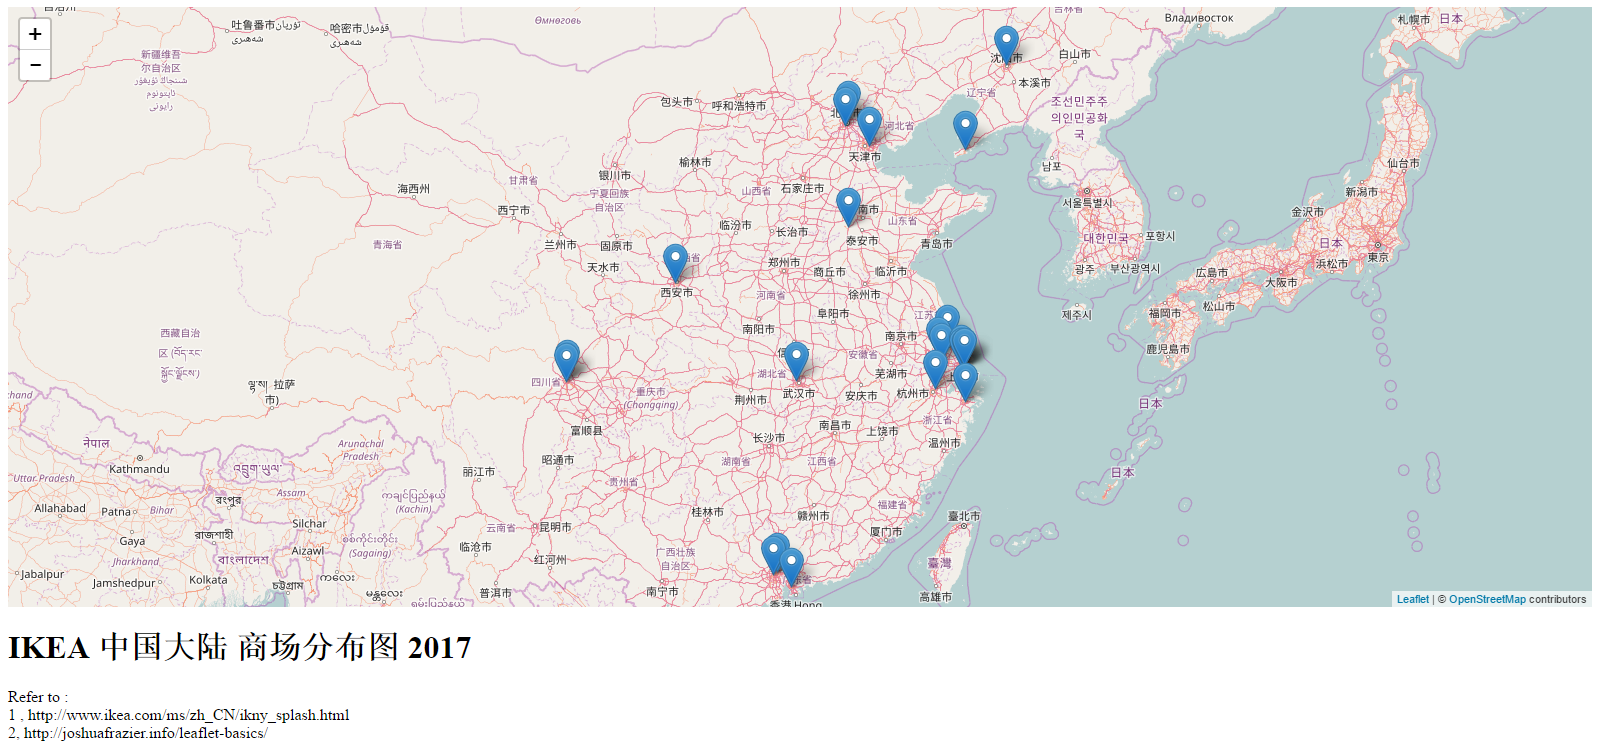 Map-Of-IKEA-China-2017